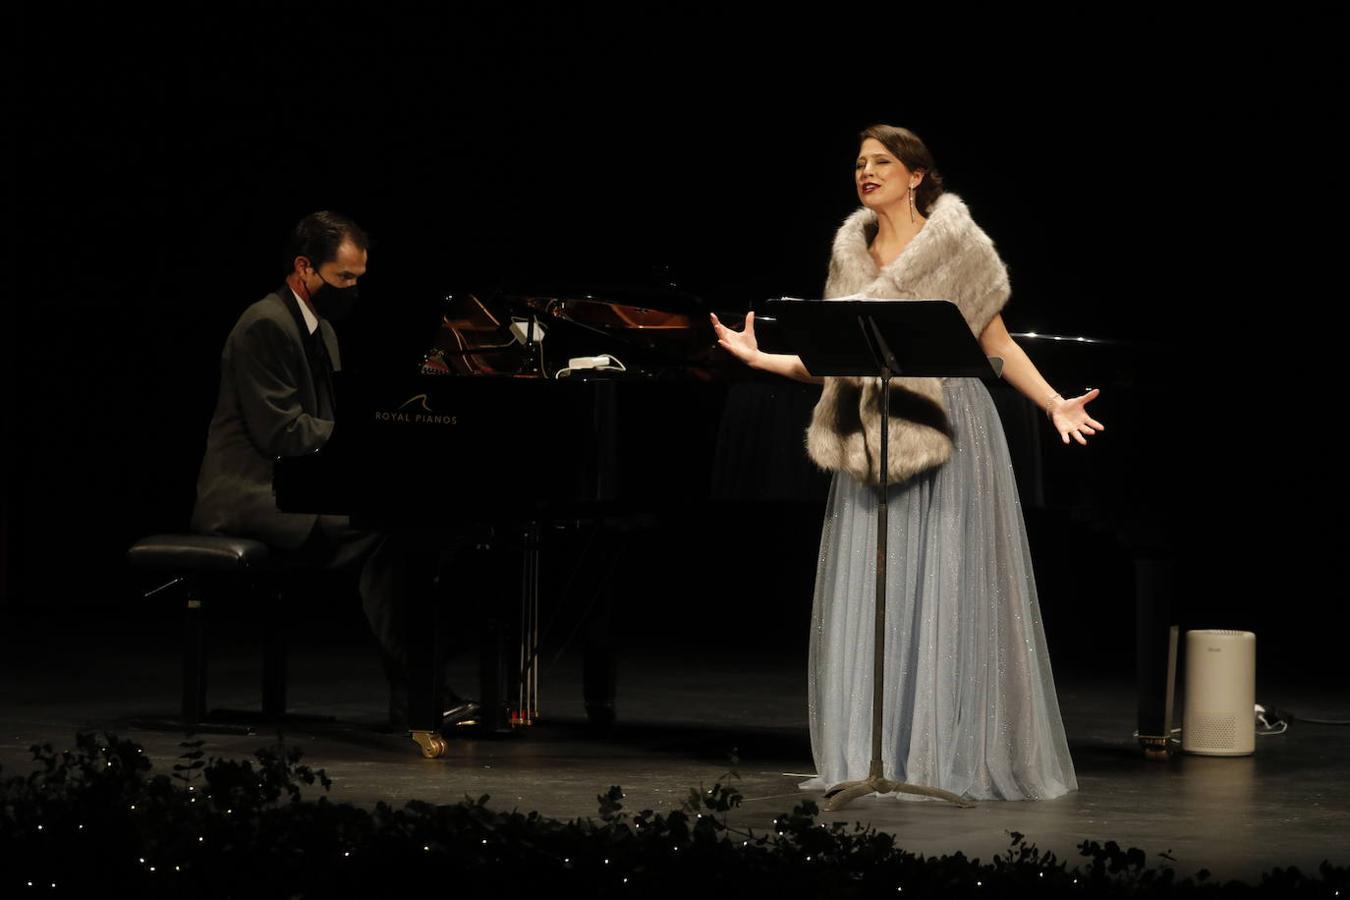 El concierto de la soprano Auxi Belmonte en Córdoba, en imágenes